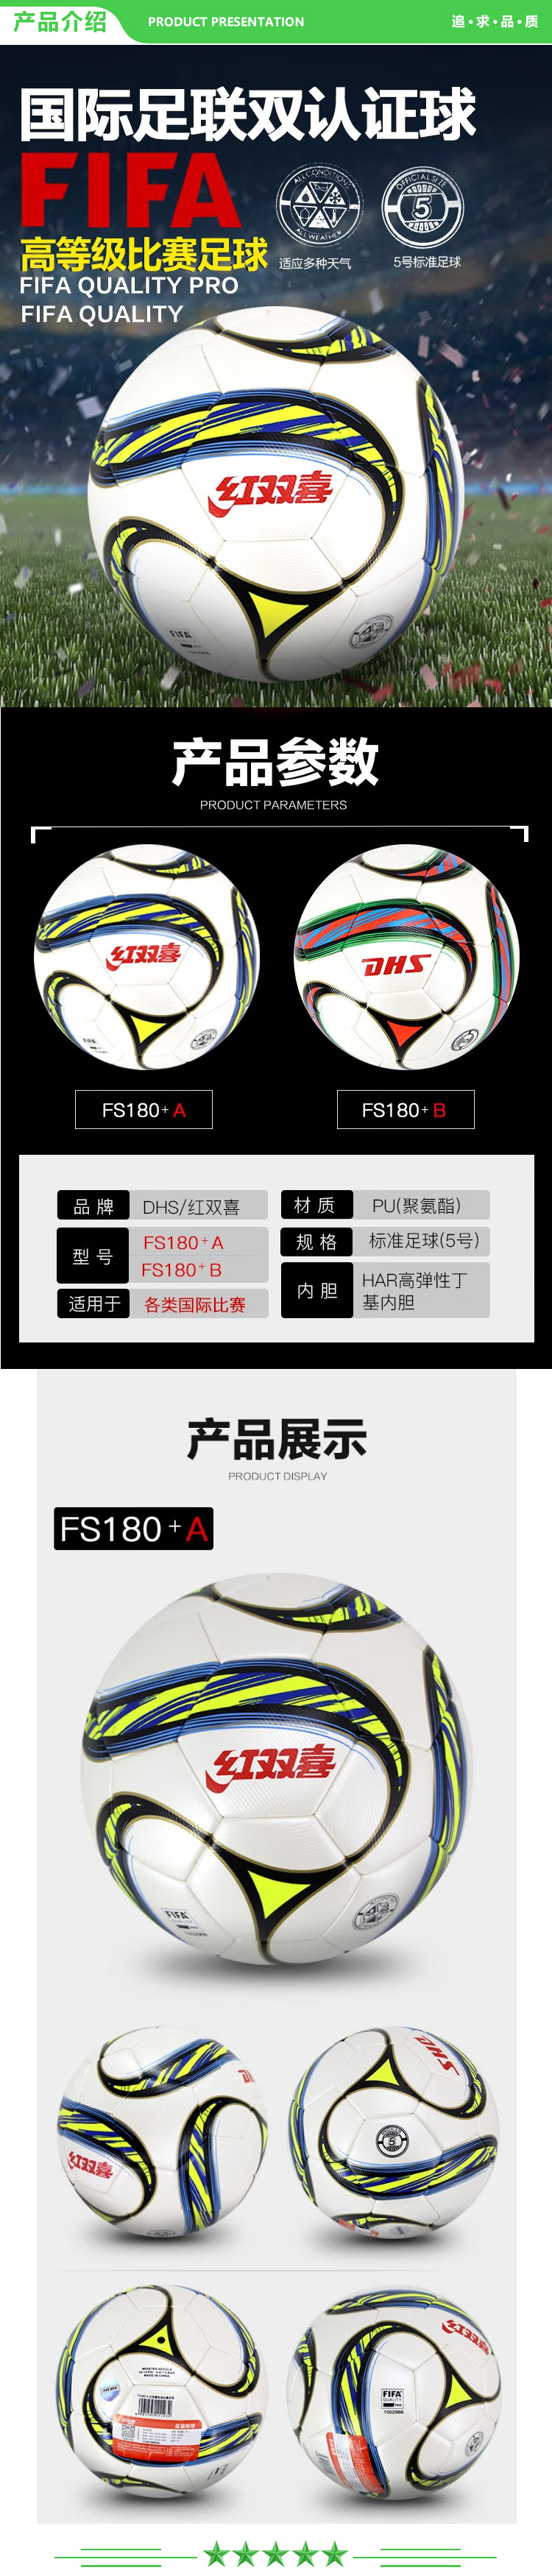 红双喜 DHS FS180+A 足球 国际专业比赛标准五号球 FIFA双认证PU球 .jpg